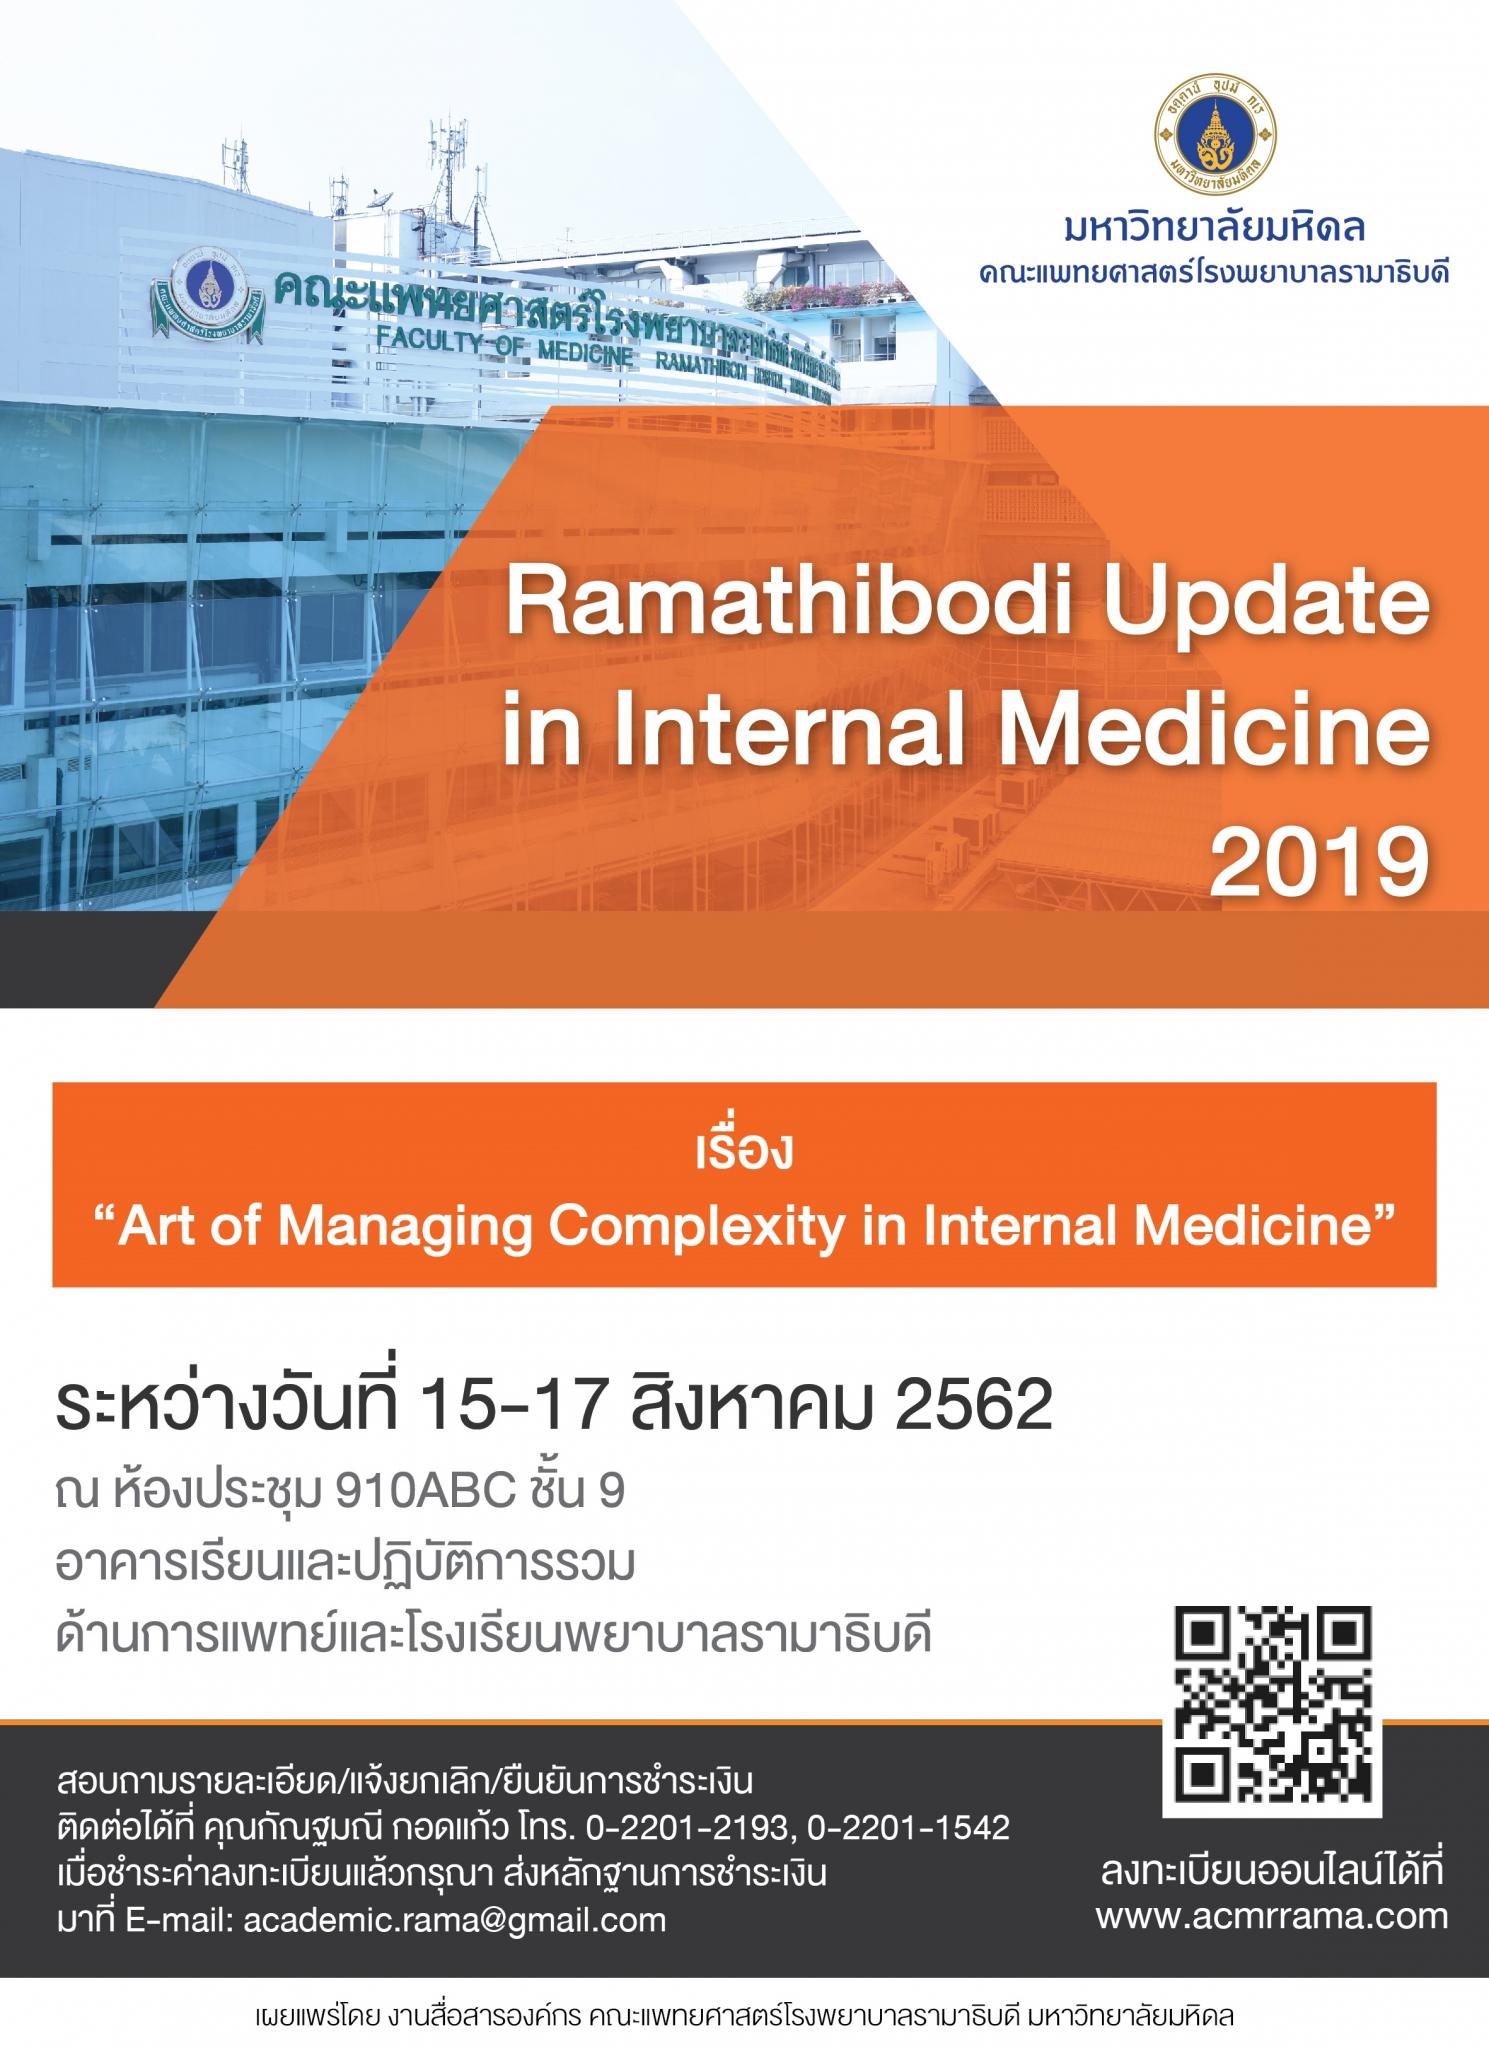 Ramathibodi Update in Internal Medicine 2019 เรื่อง "Art of Managing Complexity in Internal Medicine"